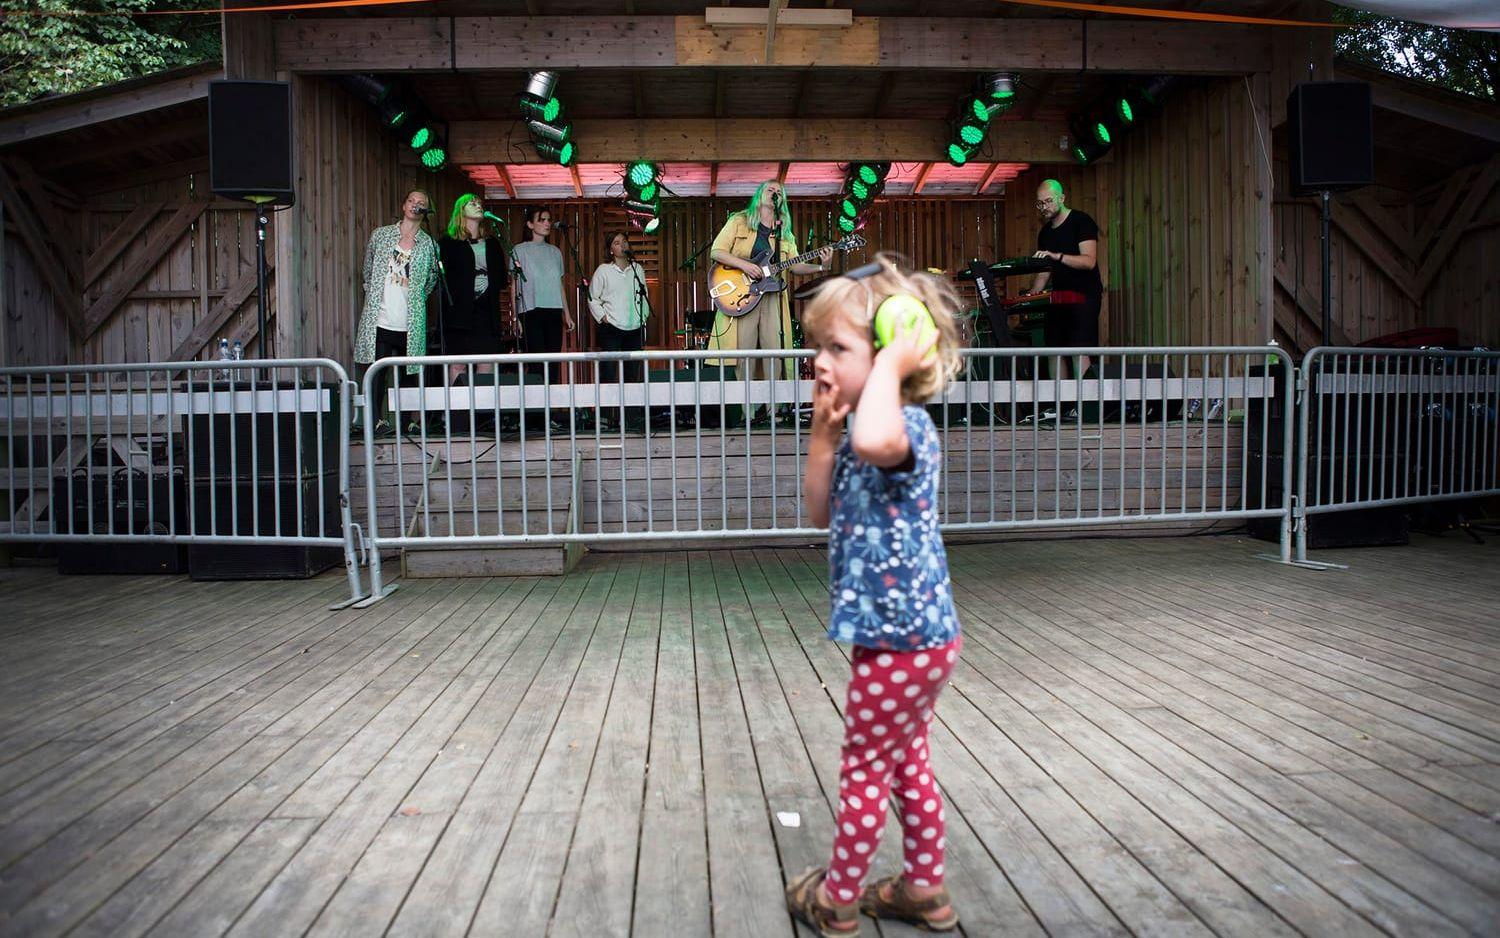 Lycke Carlsson Evert, 2,5 år, tittar på Mira Aasma som spelar på scenen. Bild: Tomas Ohlsson